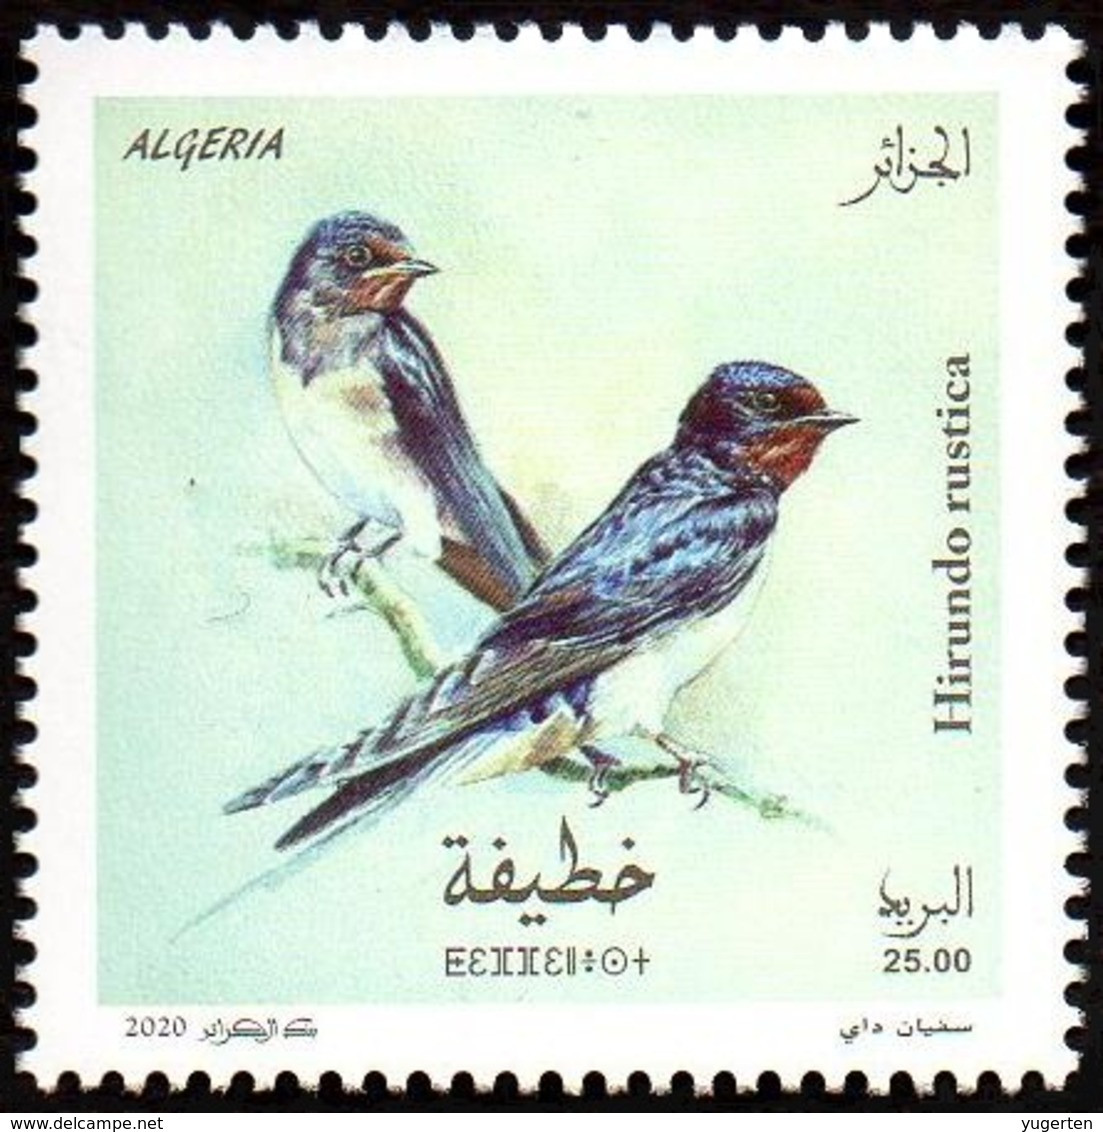 ALGERIE ALGERIA 2020 - 1v - MNH Hirondelles Hirondelle Swallows Swallow Schwalben Schlucke Birds Aves Vögel Golondrinas - Golondrinas